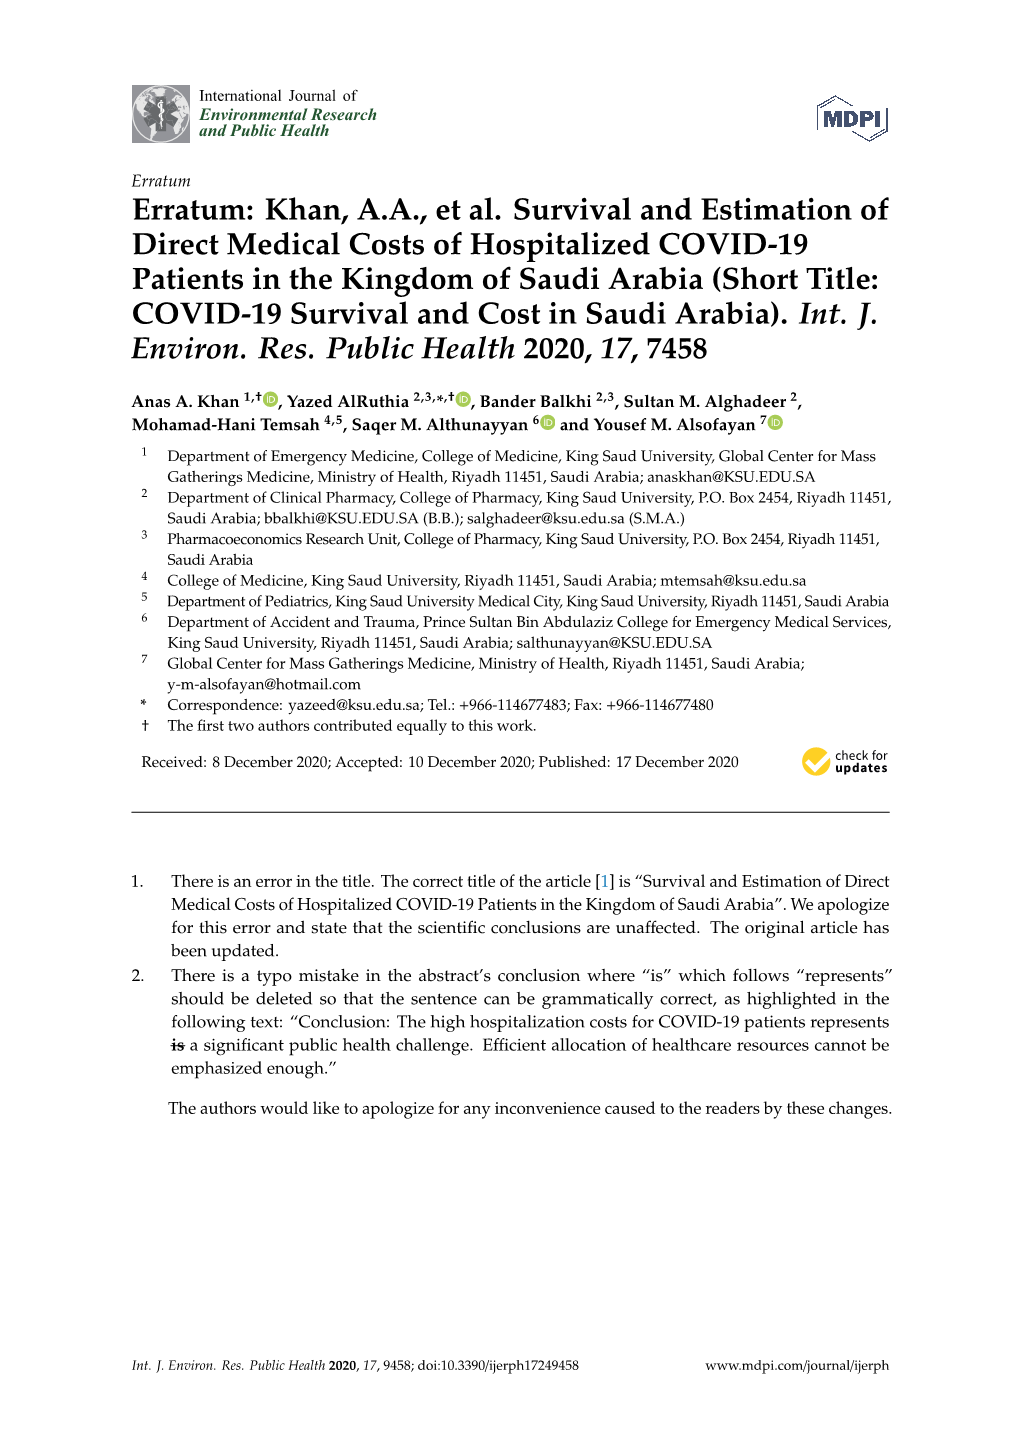 Erratum: Khan, A.A., Et Al. Survival and Estimation of Direct Medical Costs